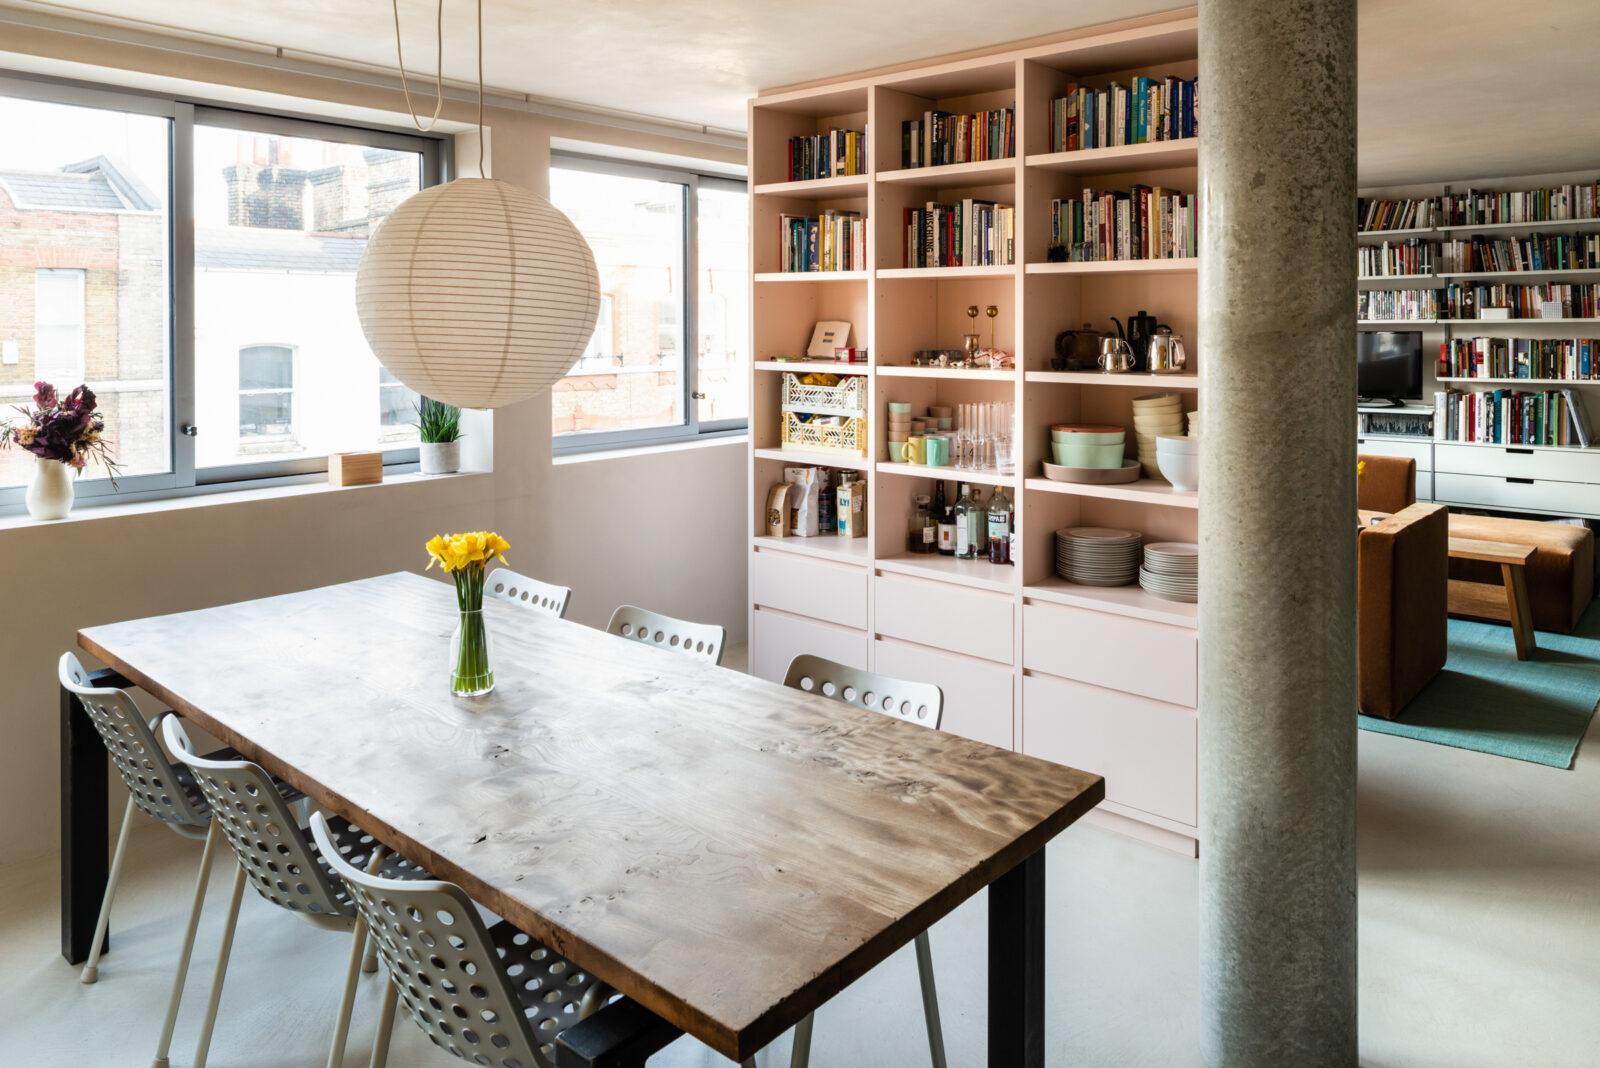 利用鮮豔色彩妝點空間，為住宅營造現代活力氛圍